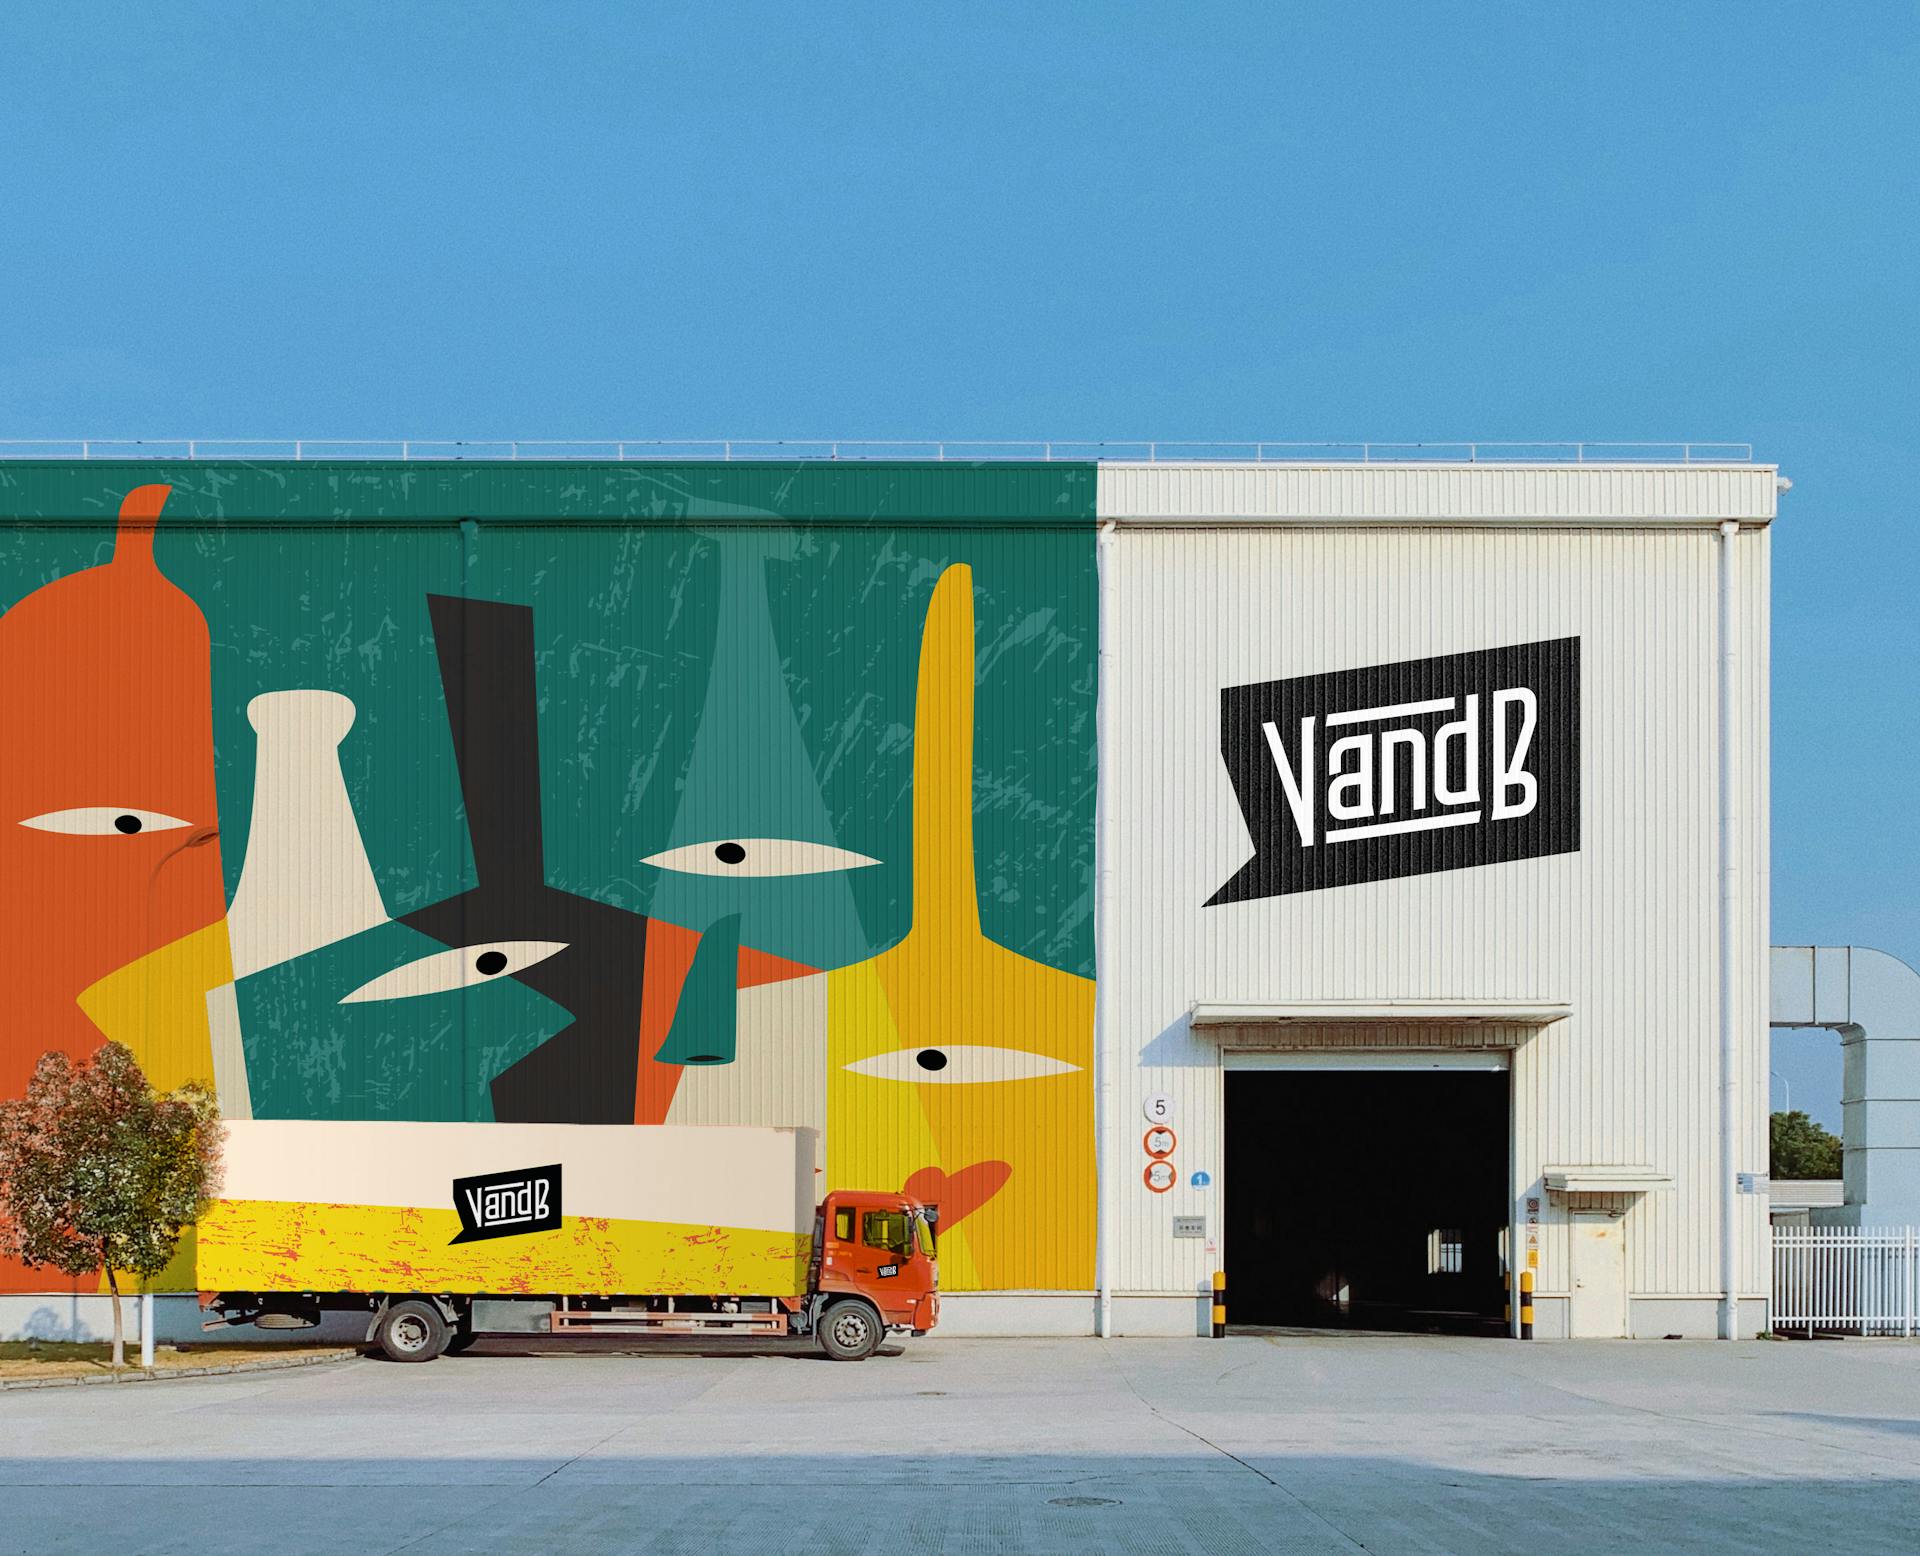 Un hangar et un camion à l'effigie de la nouvelle identité de marque du groupe V and B.